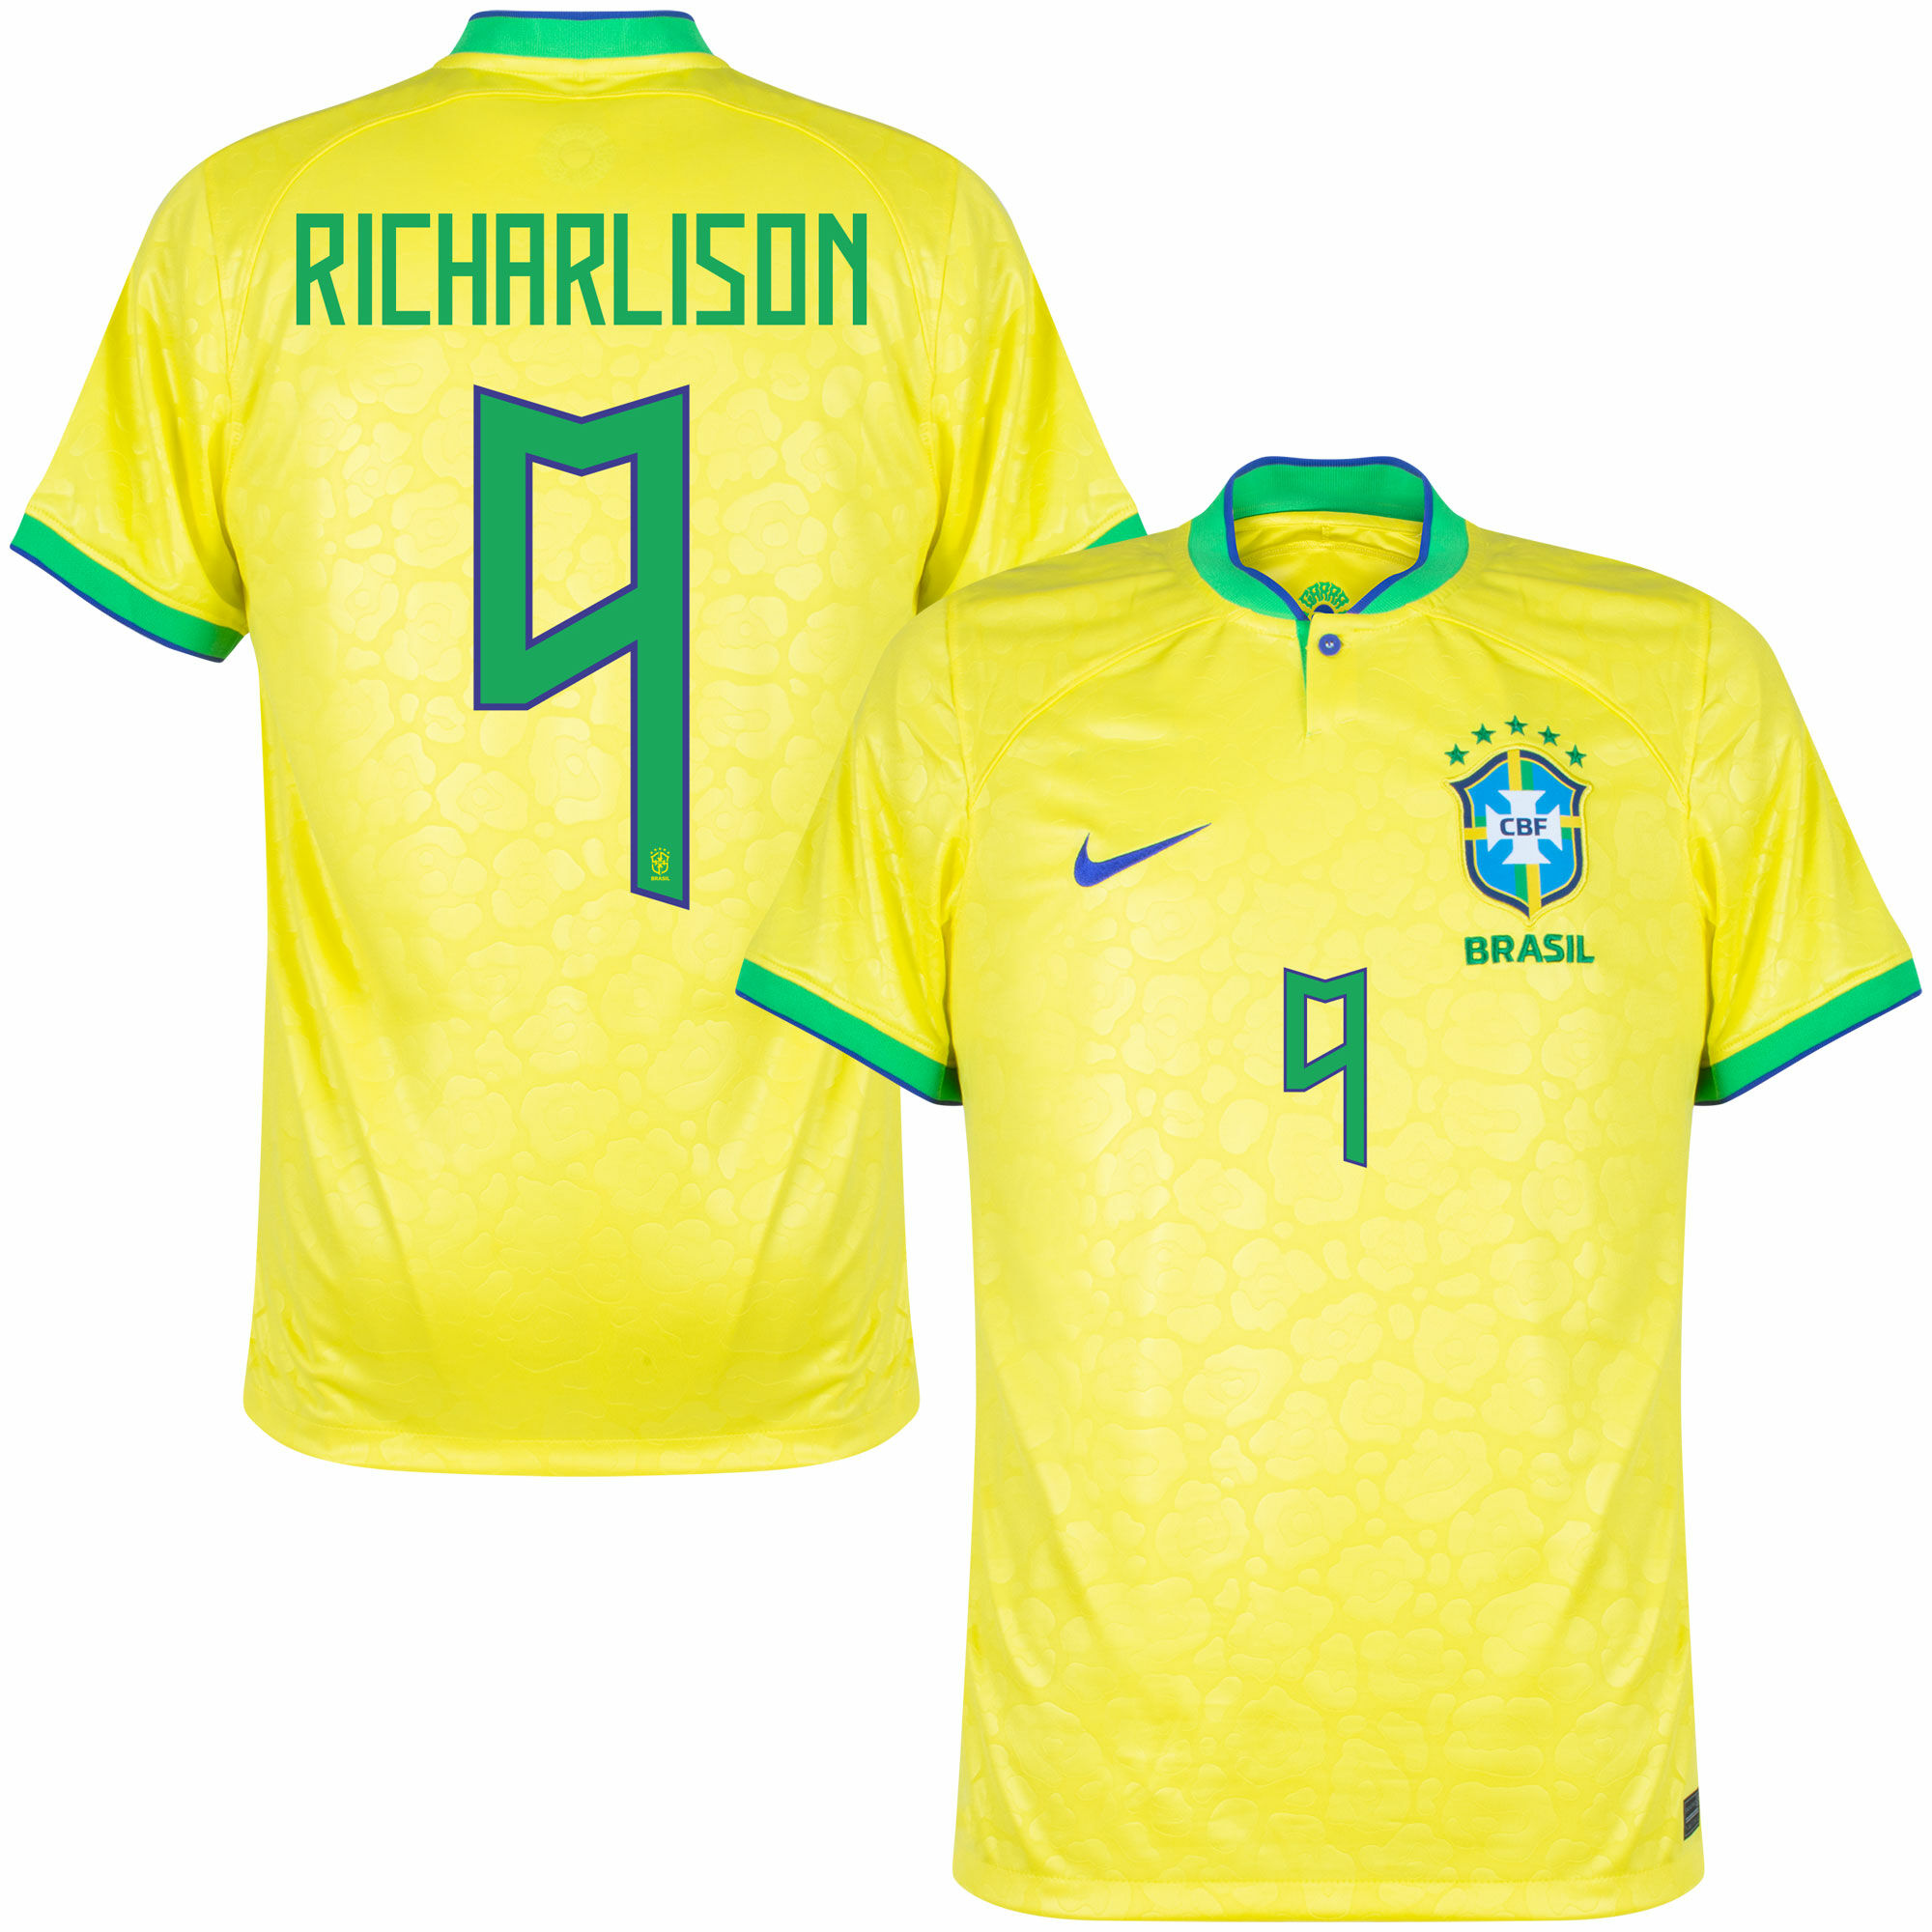 Brazílie - Dres fotbalový - Richarlison, oficiální potisk, žlutý, domácí, sezóna 2022/23, číslo 9